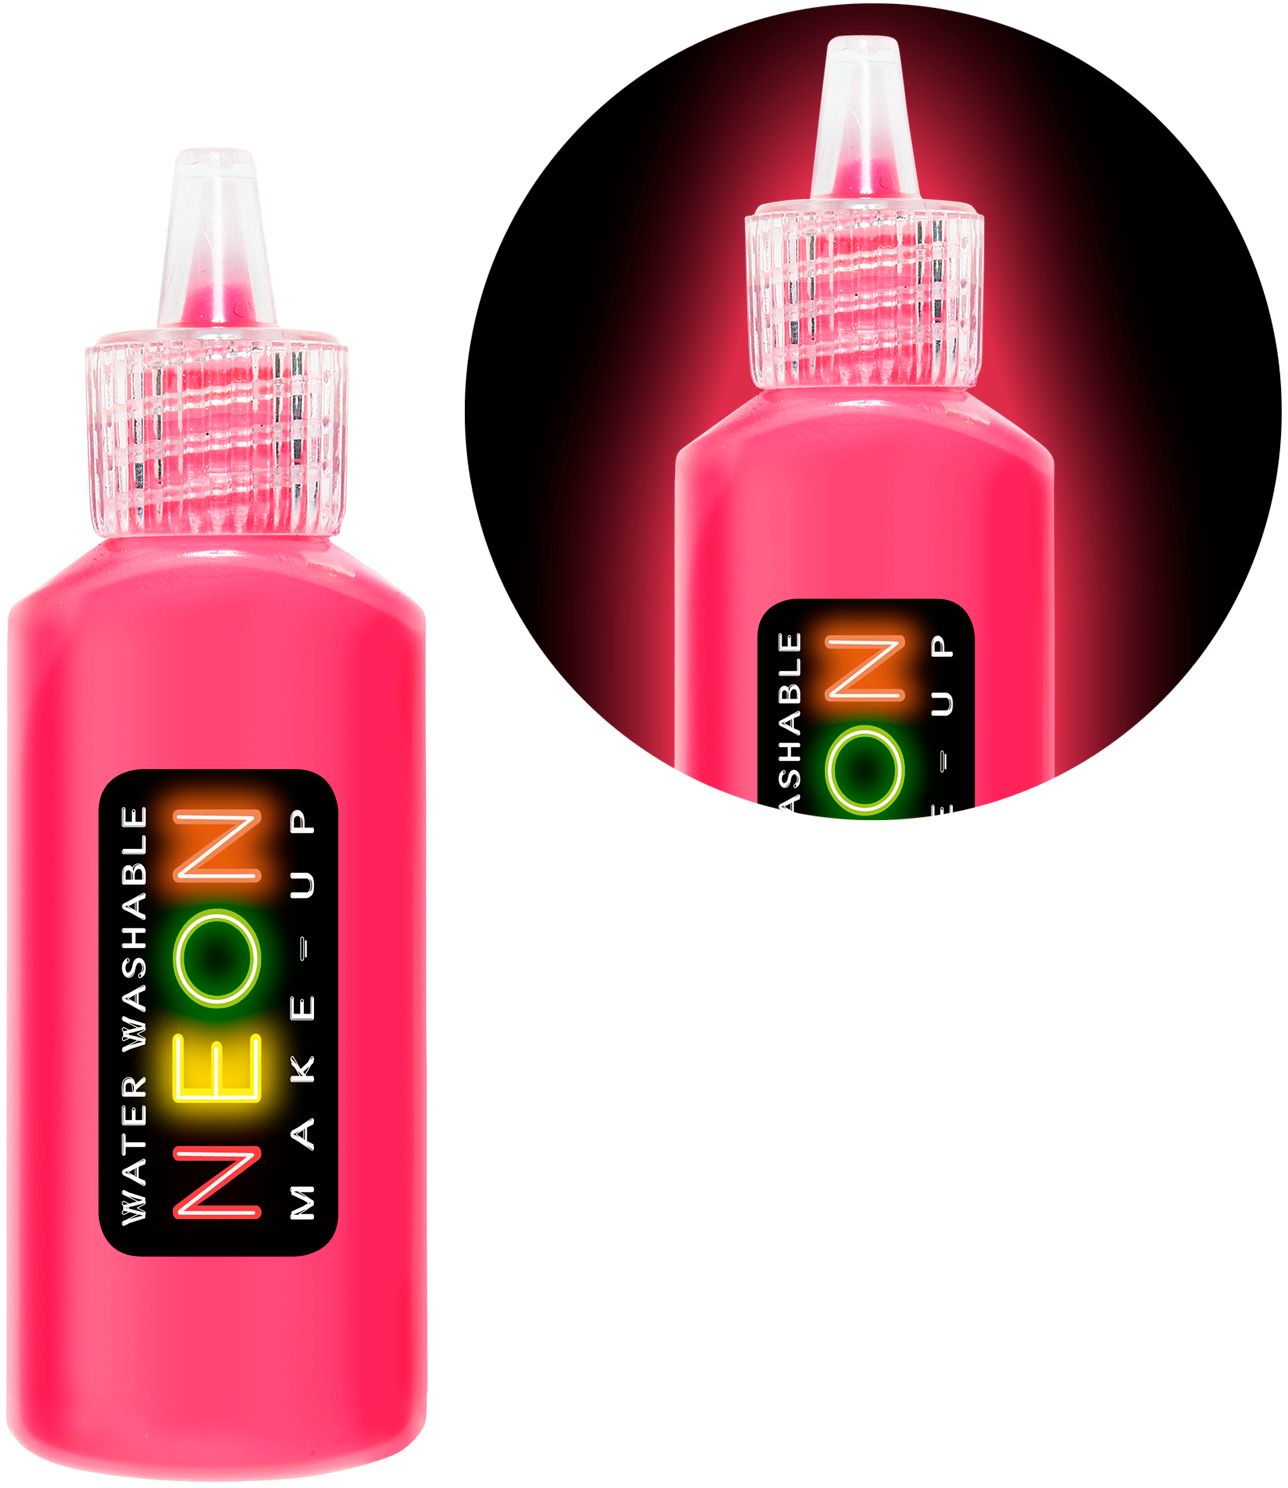 Neon roze make-up flesje